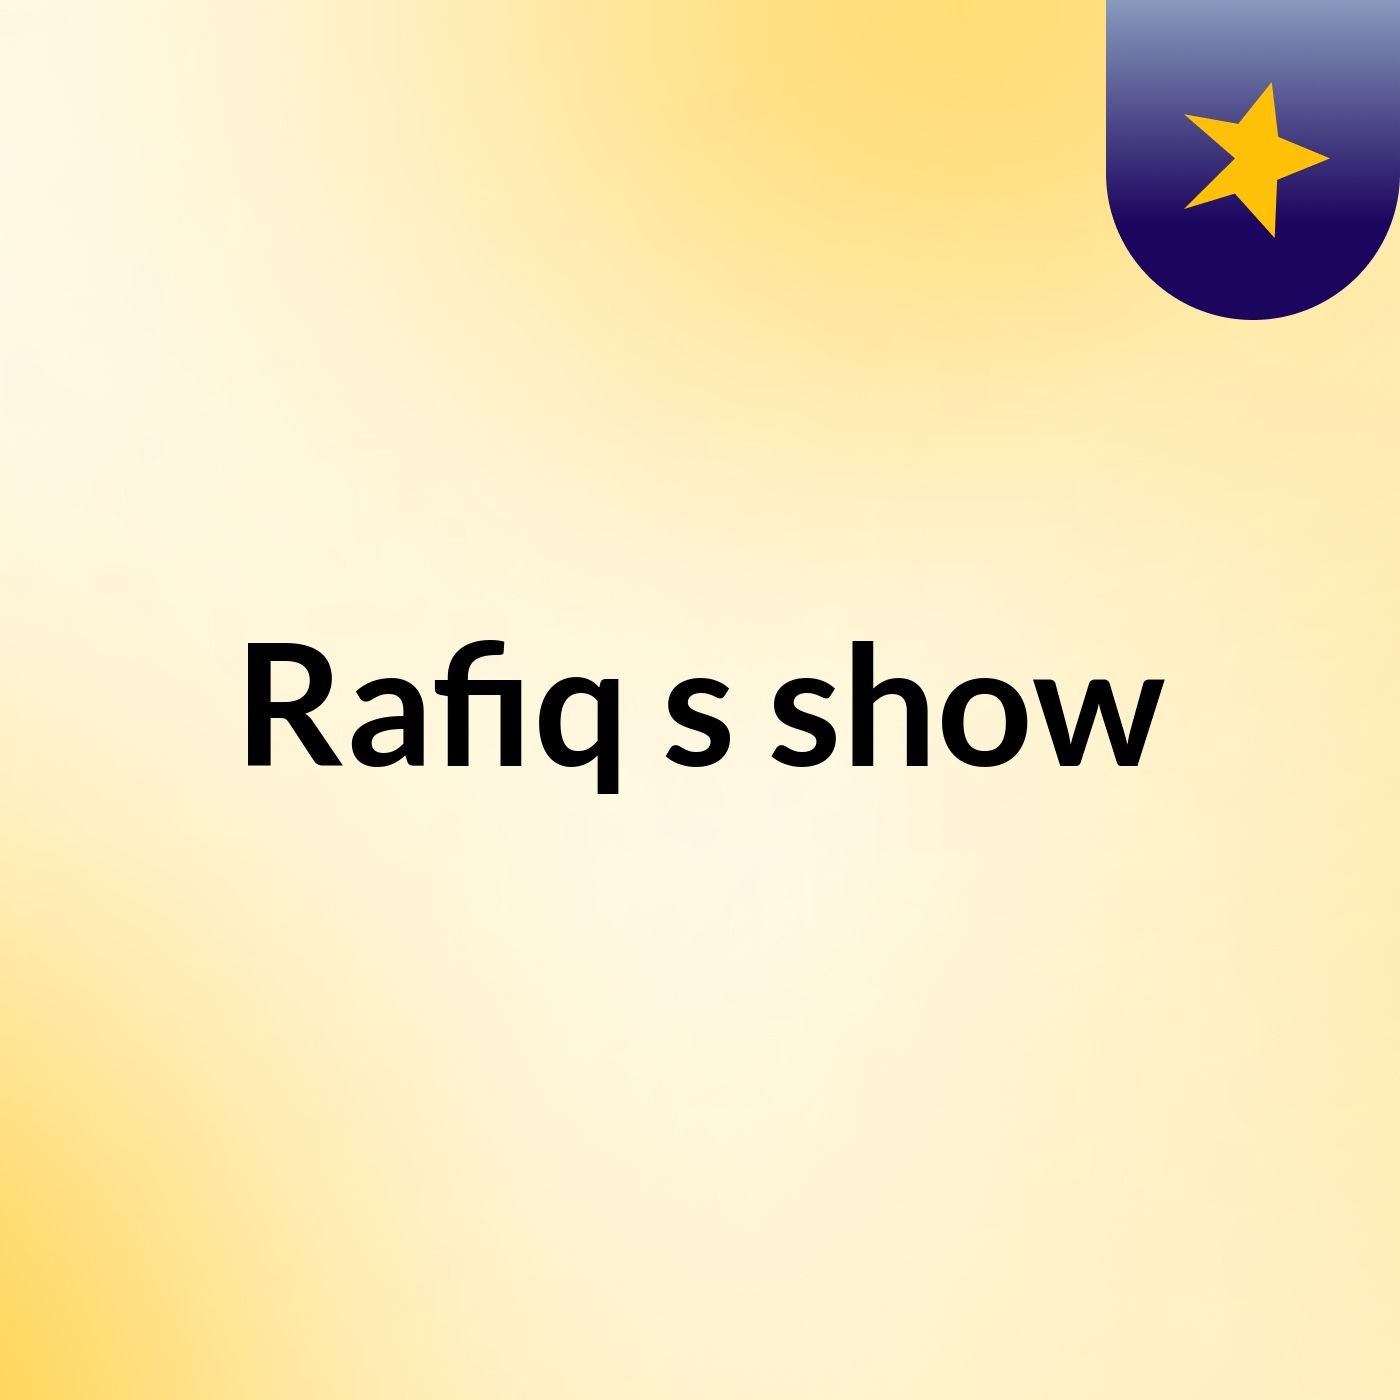 Rafiq's show